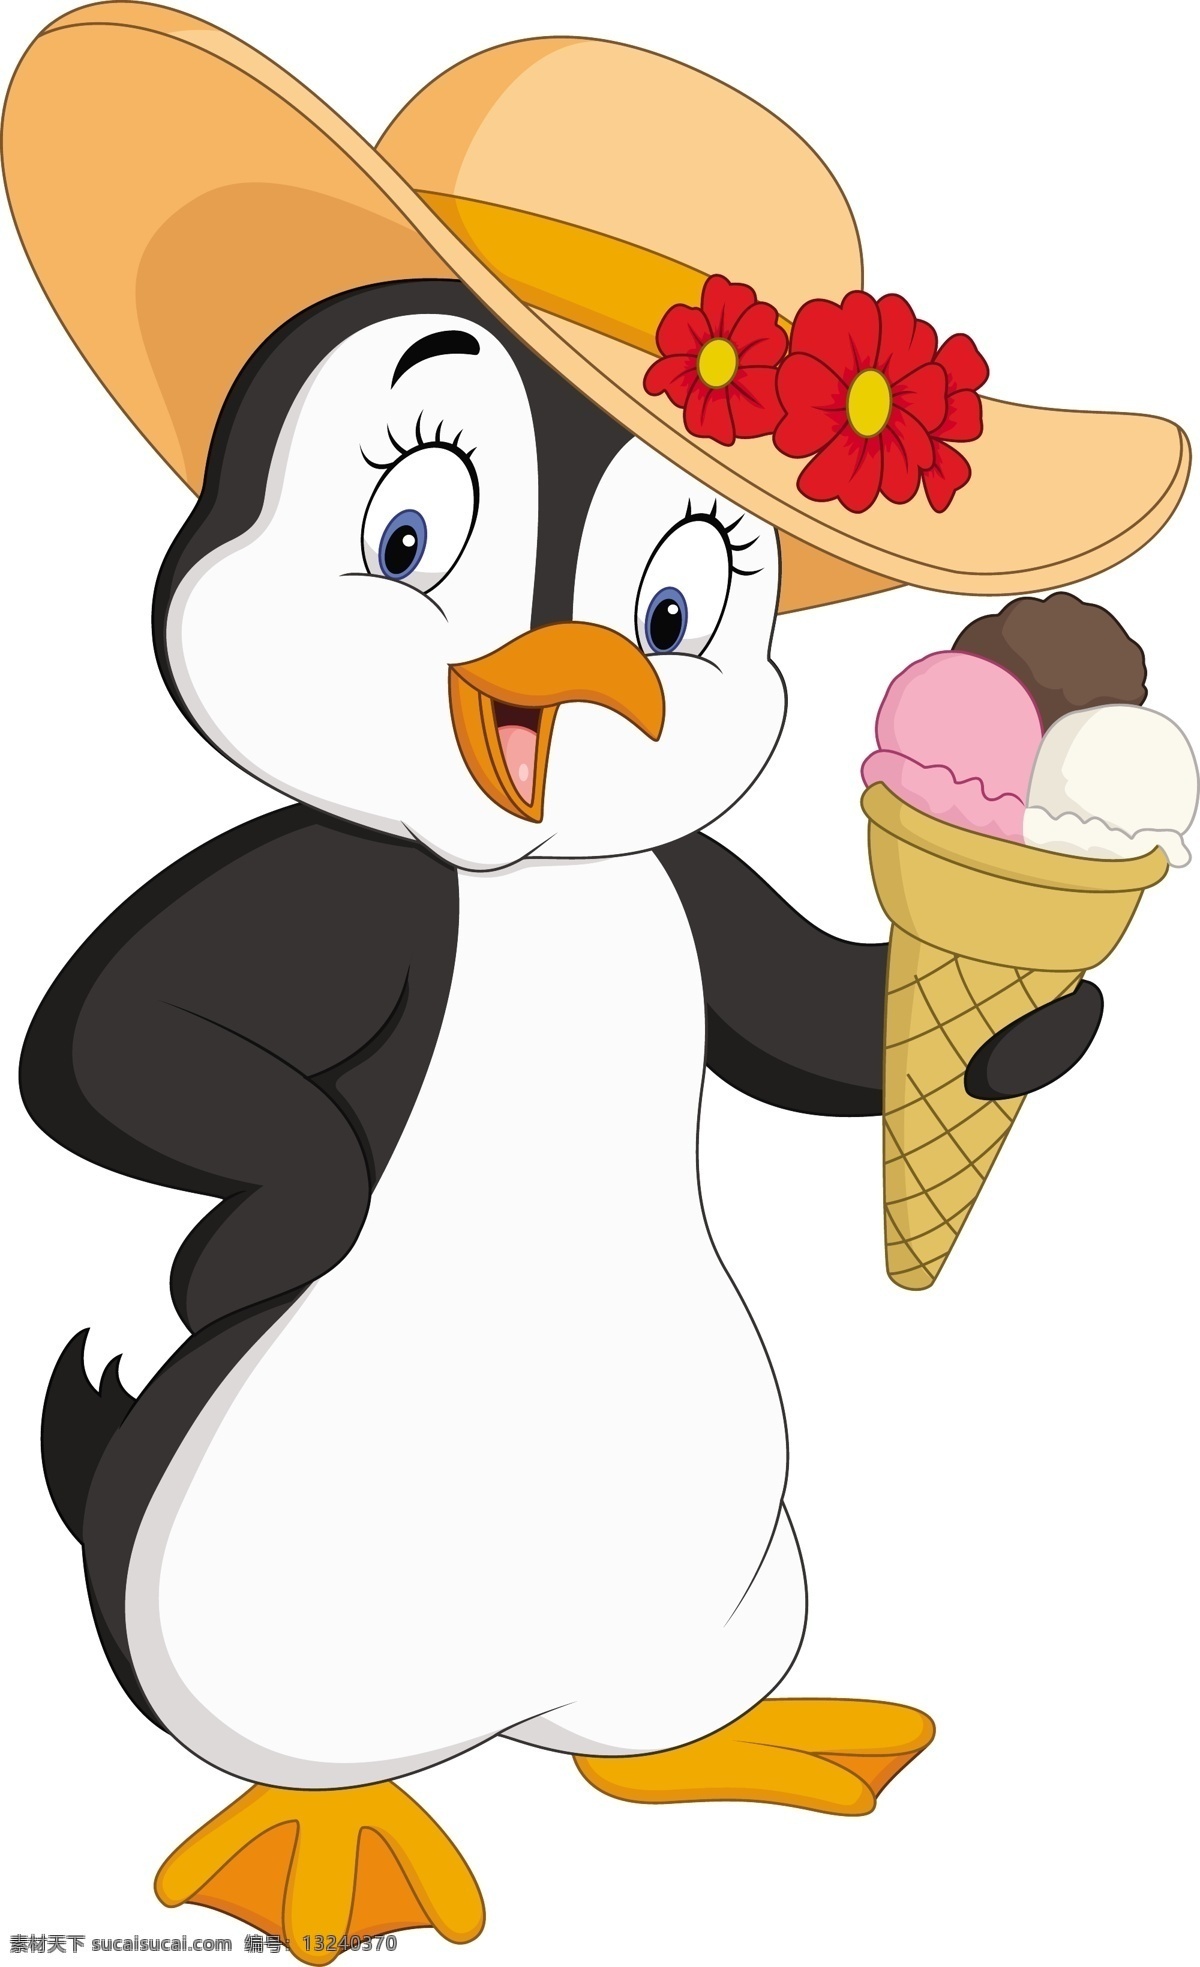 卡通企鹅 企鹅 卡通动物 可爱 卡通 动物 幼儿园素材 动物素材 夏天企鹅 卡通设计